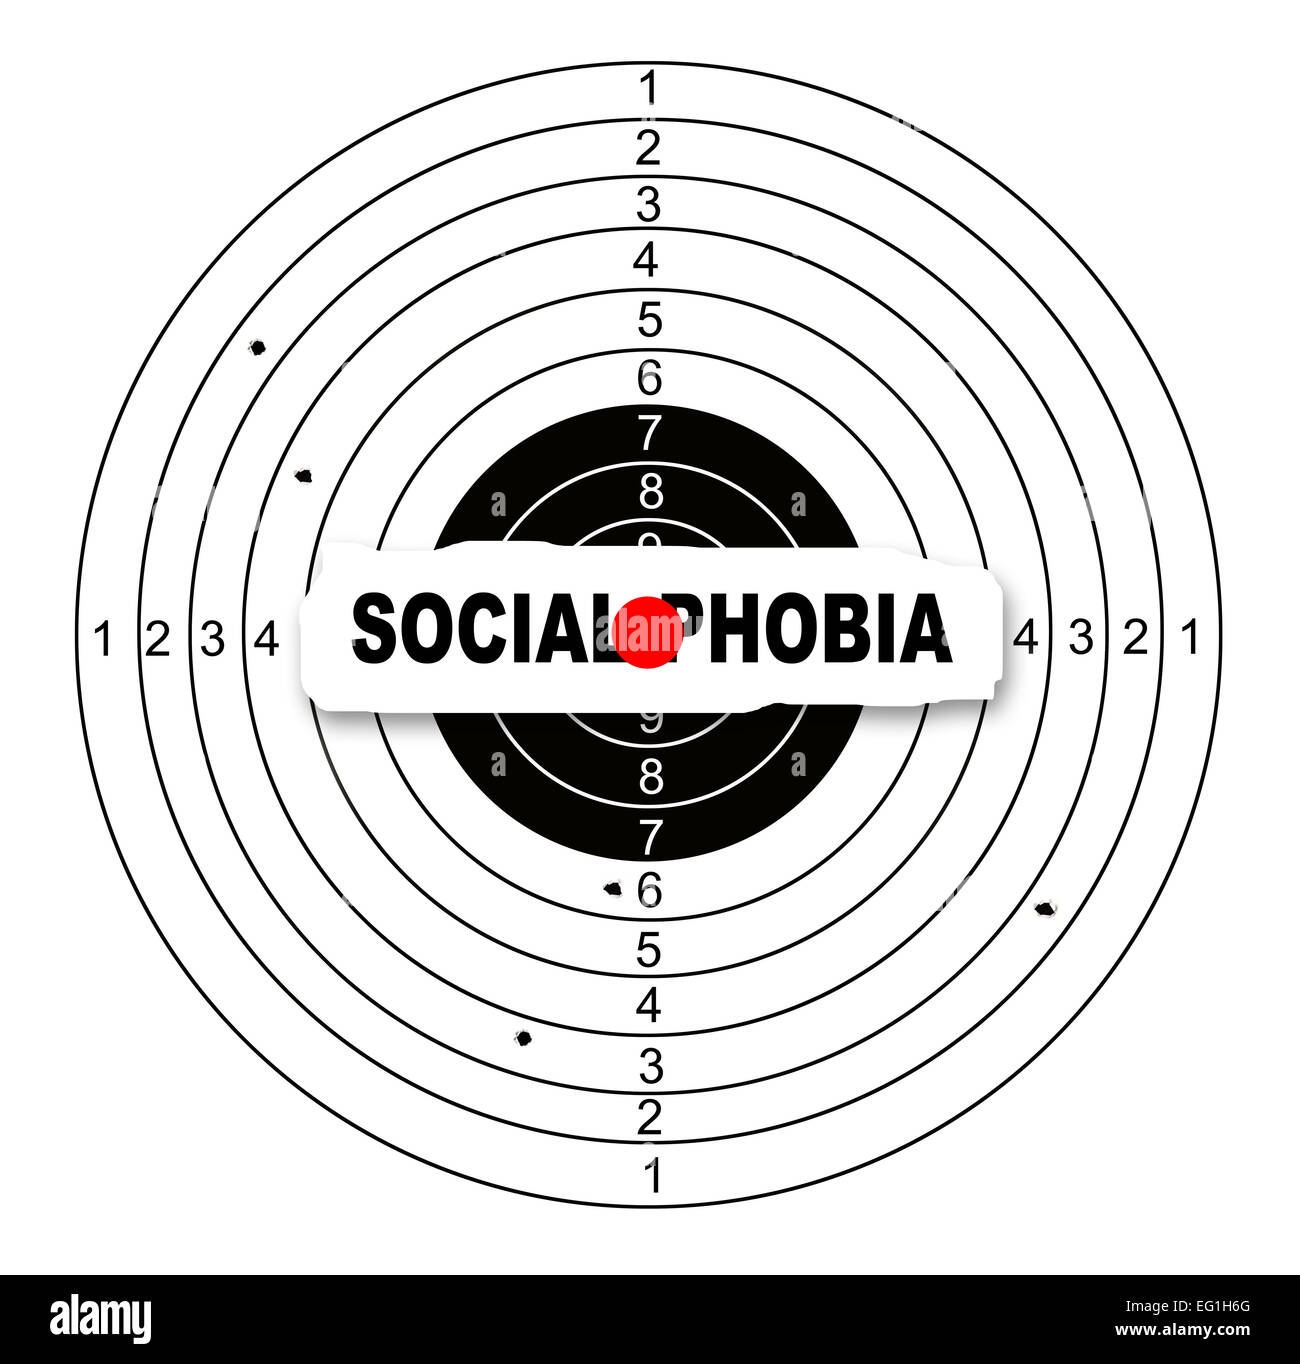 Zielscheibe mit Wort, die soziale Phobie in 2d Software gemacht Stockfoto